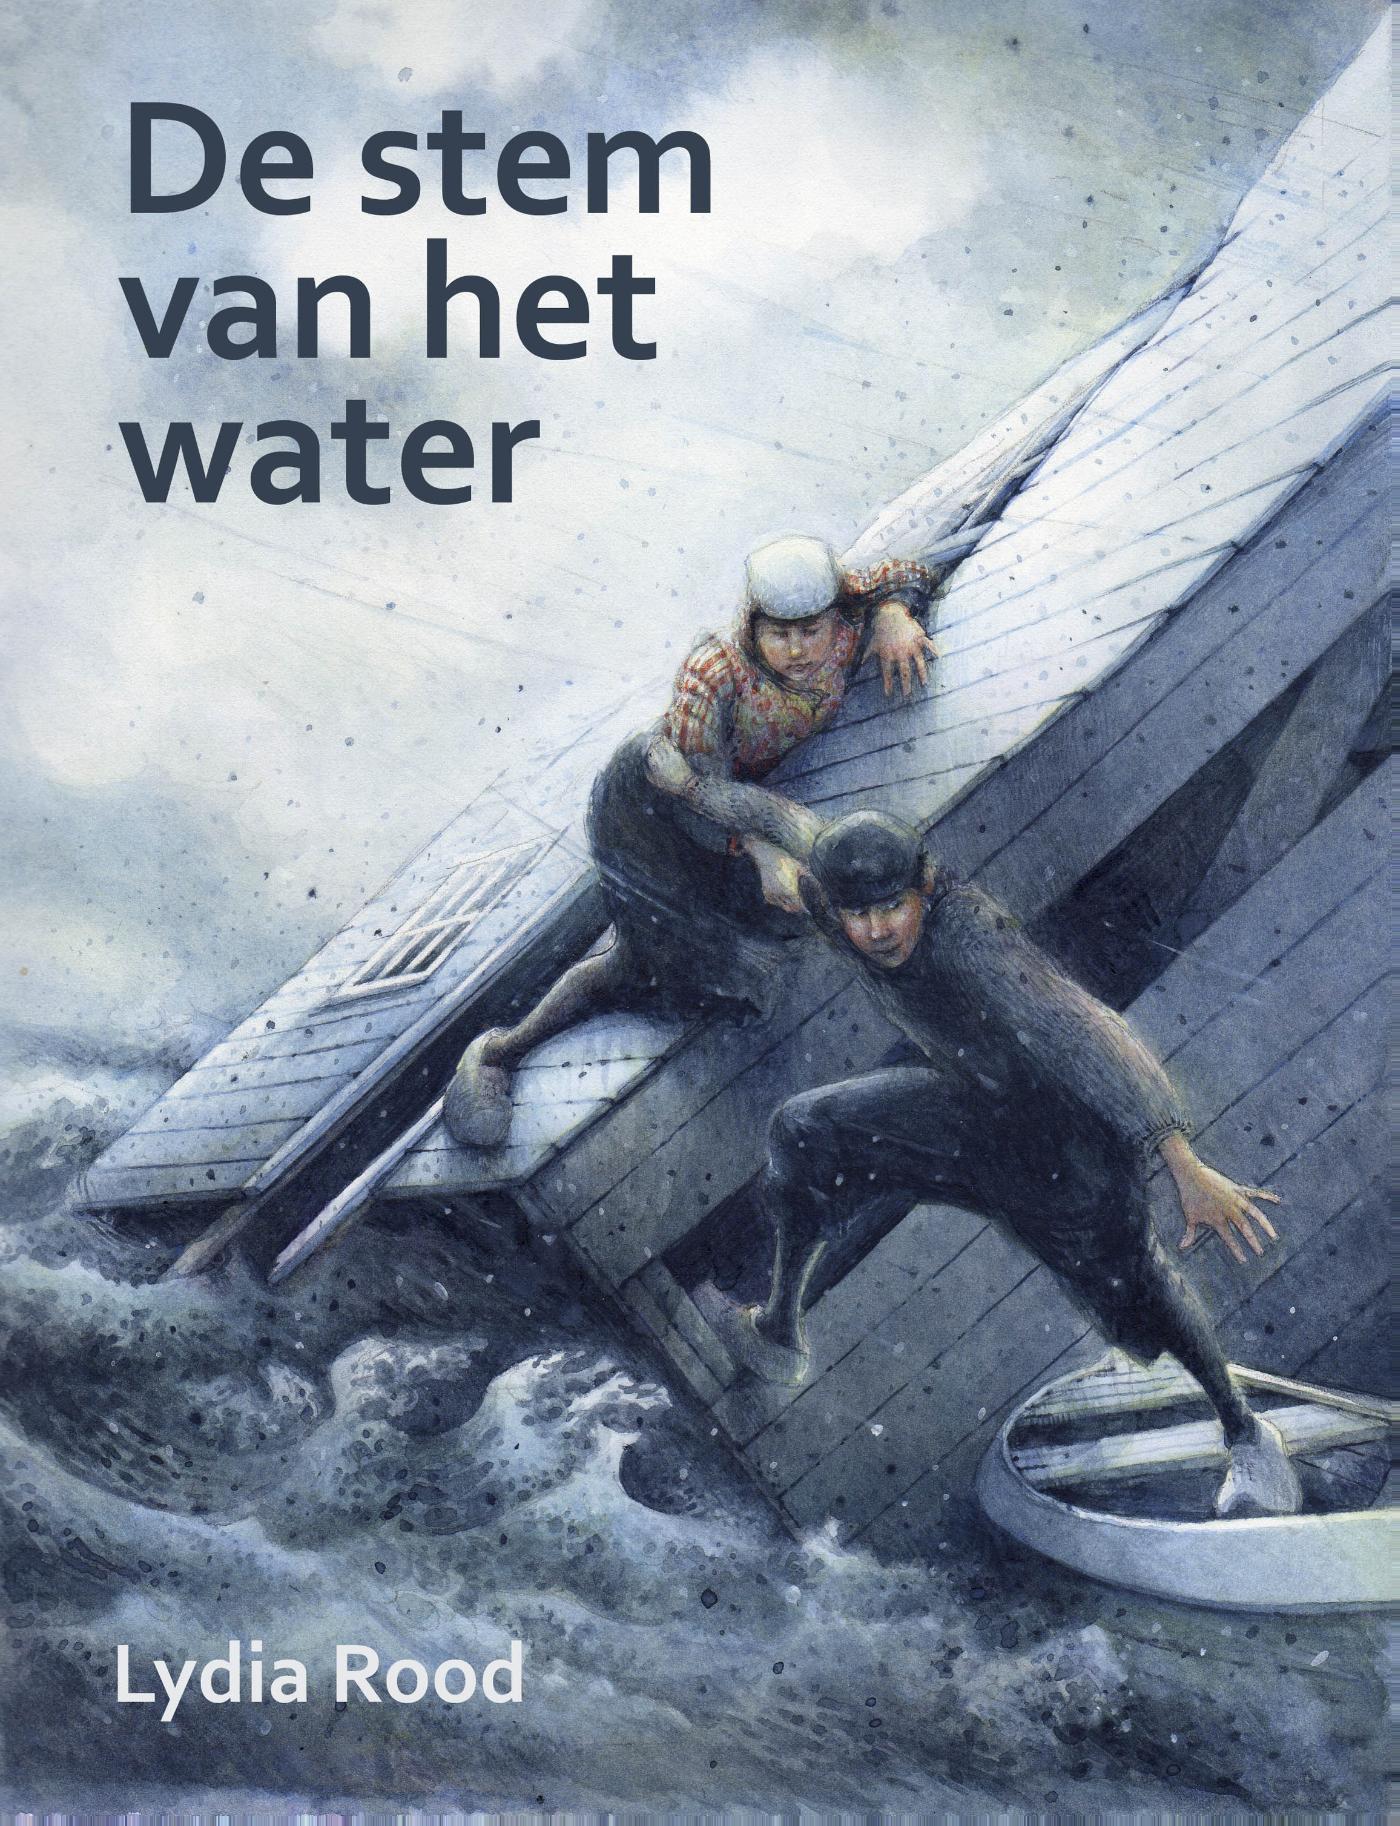 De stem van het water (Ebook)